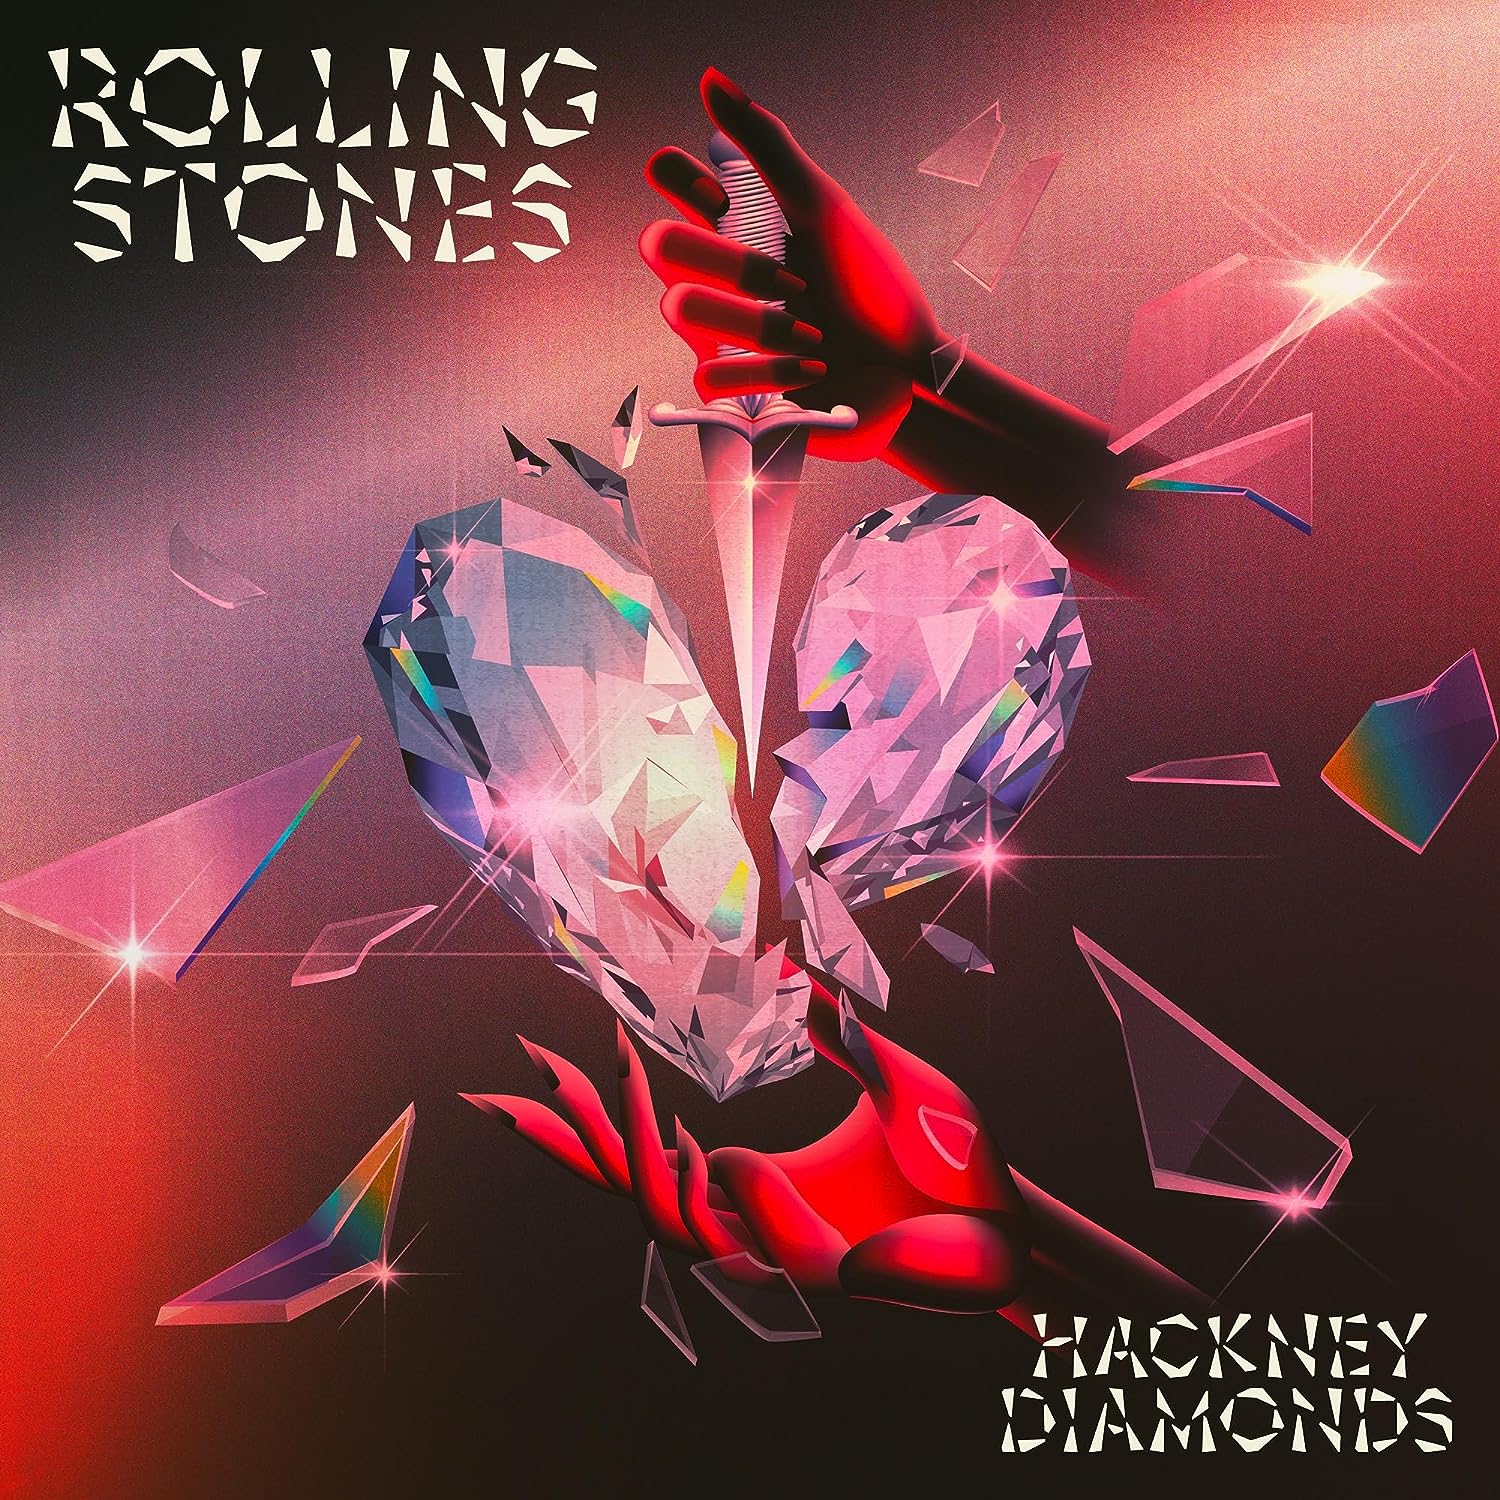 The Rolling Stones / Hackney Diamonds – SuperDeluxeEdition